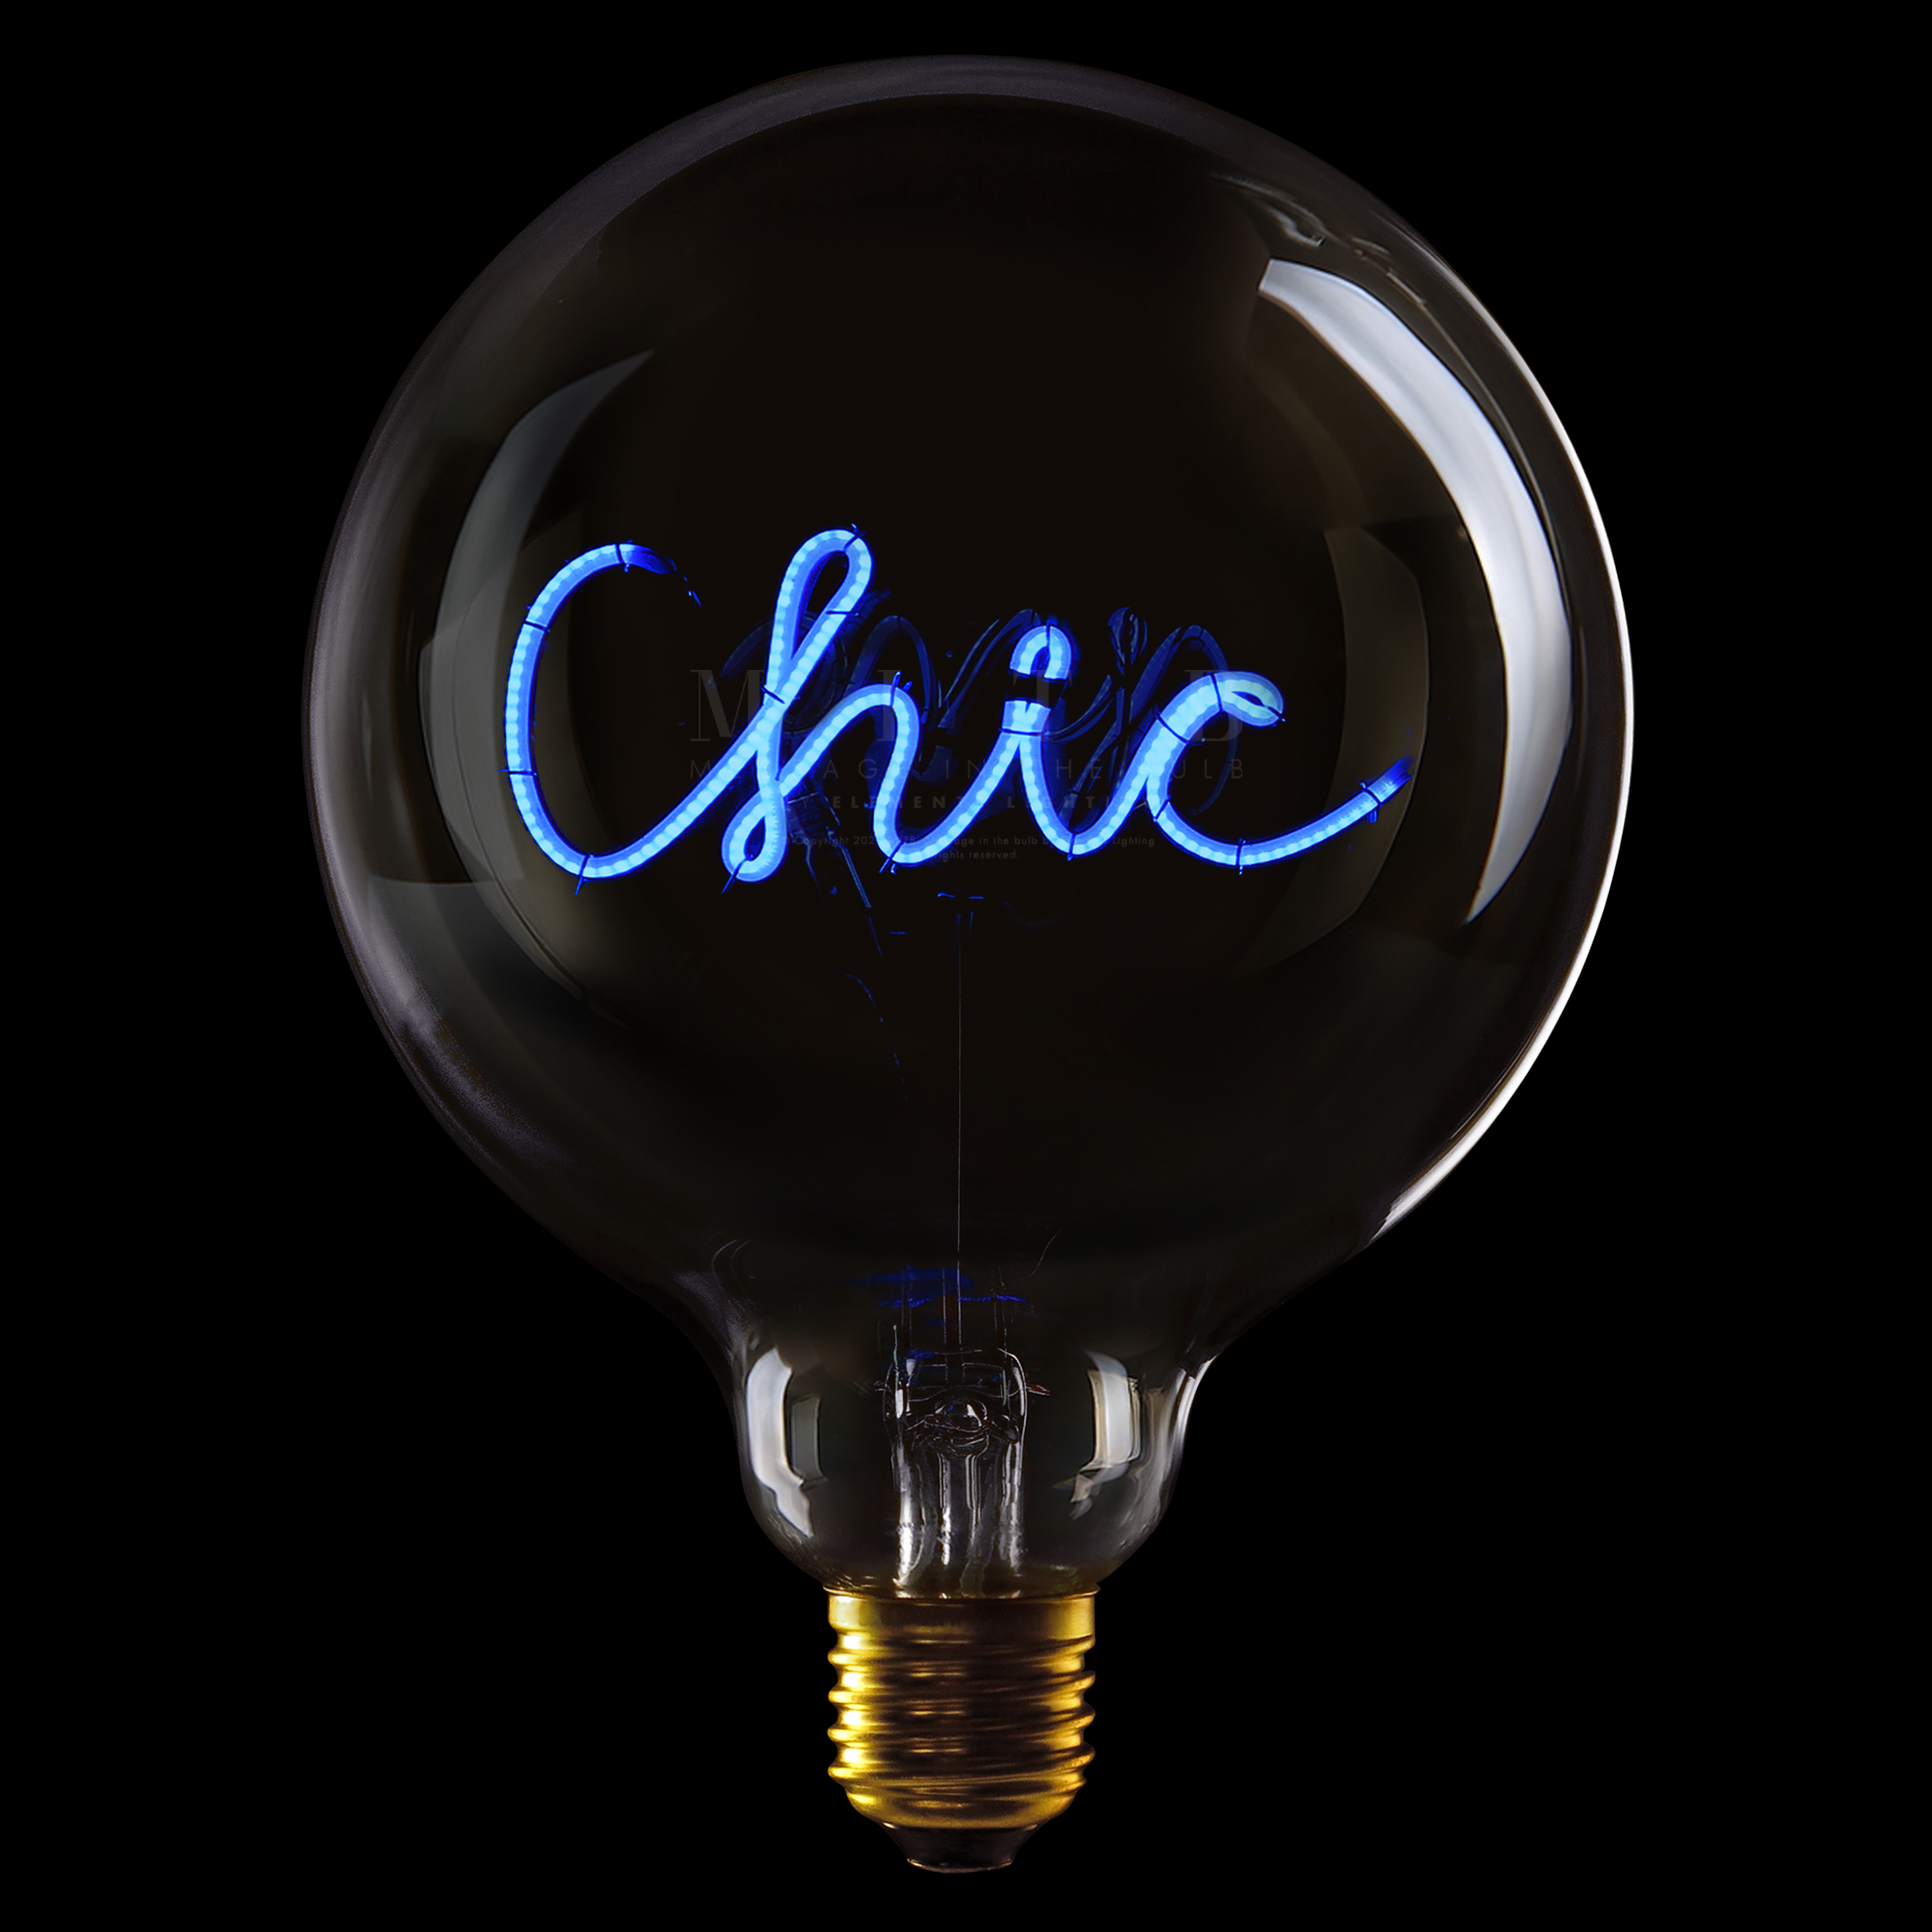 MITB LED Birne "Chic" - E27